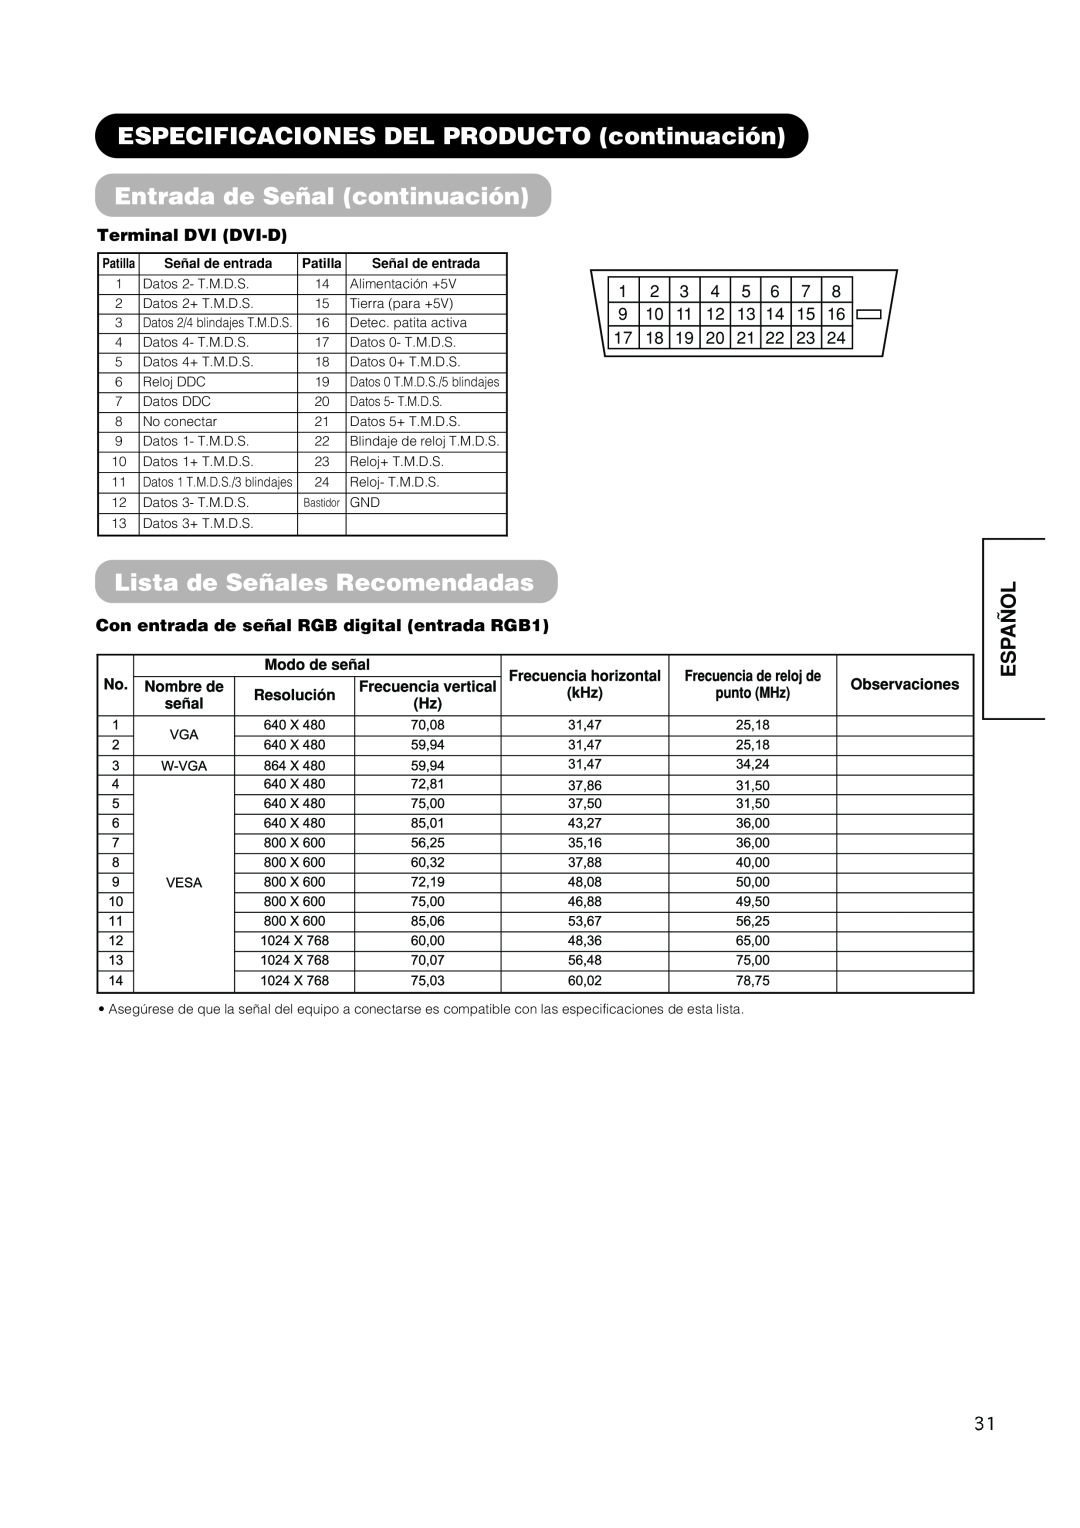 Hitachi PW1A ESPECIFICACIONES DEL PRODUCTO continuación, Entrada de Señal continuación, Lista de Señales Recomendadas 